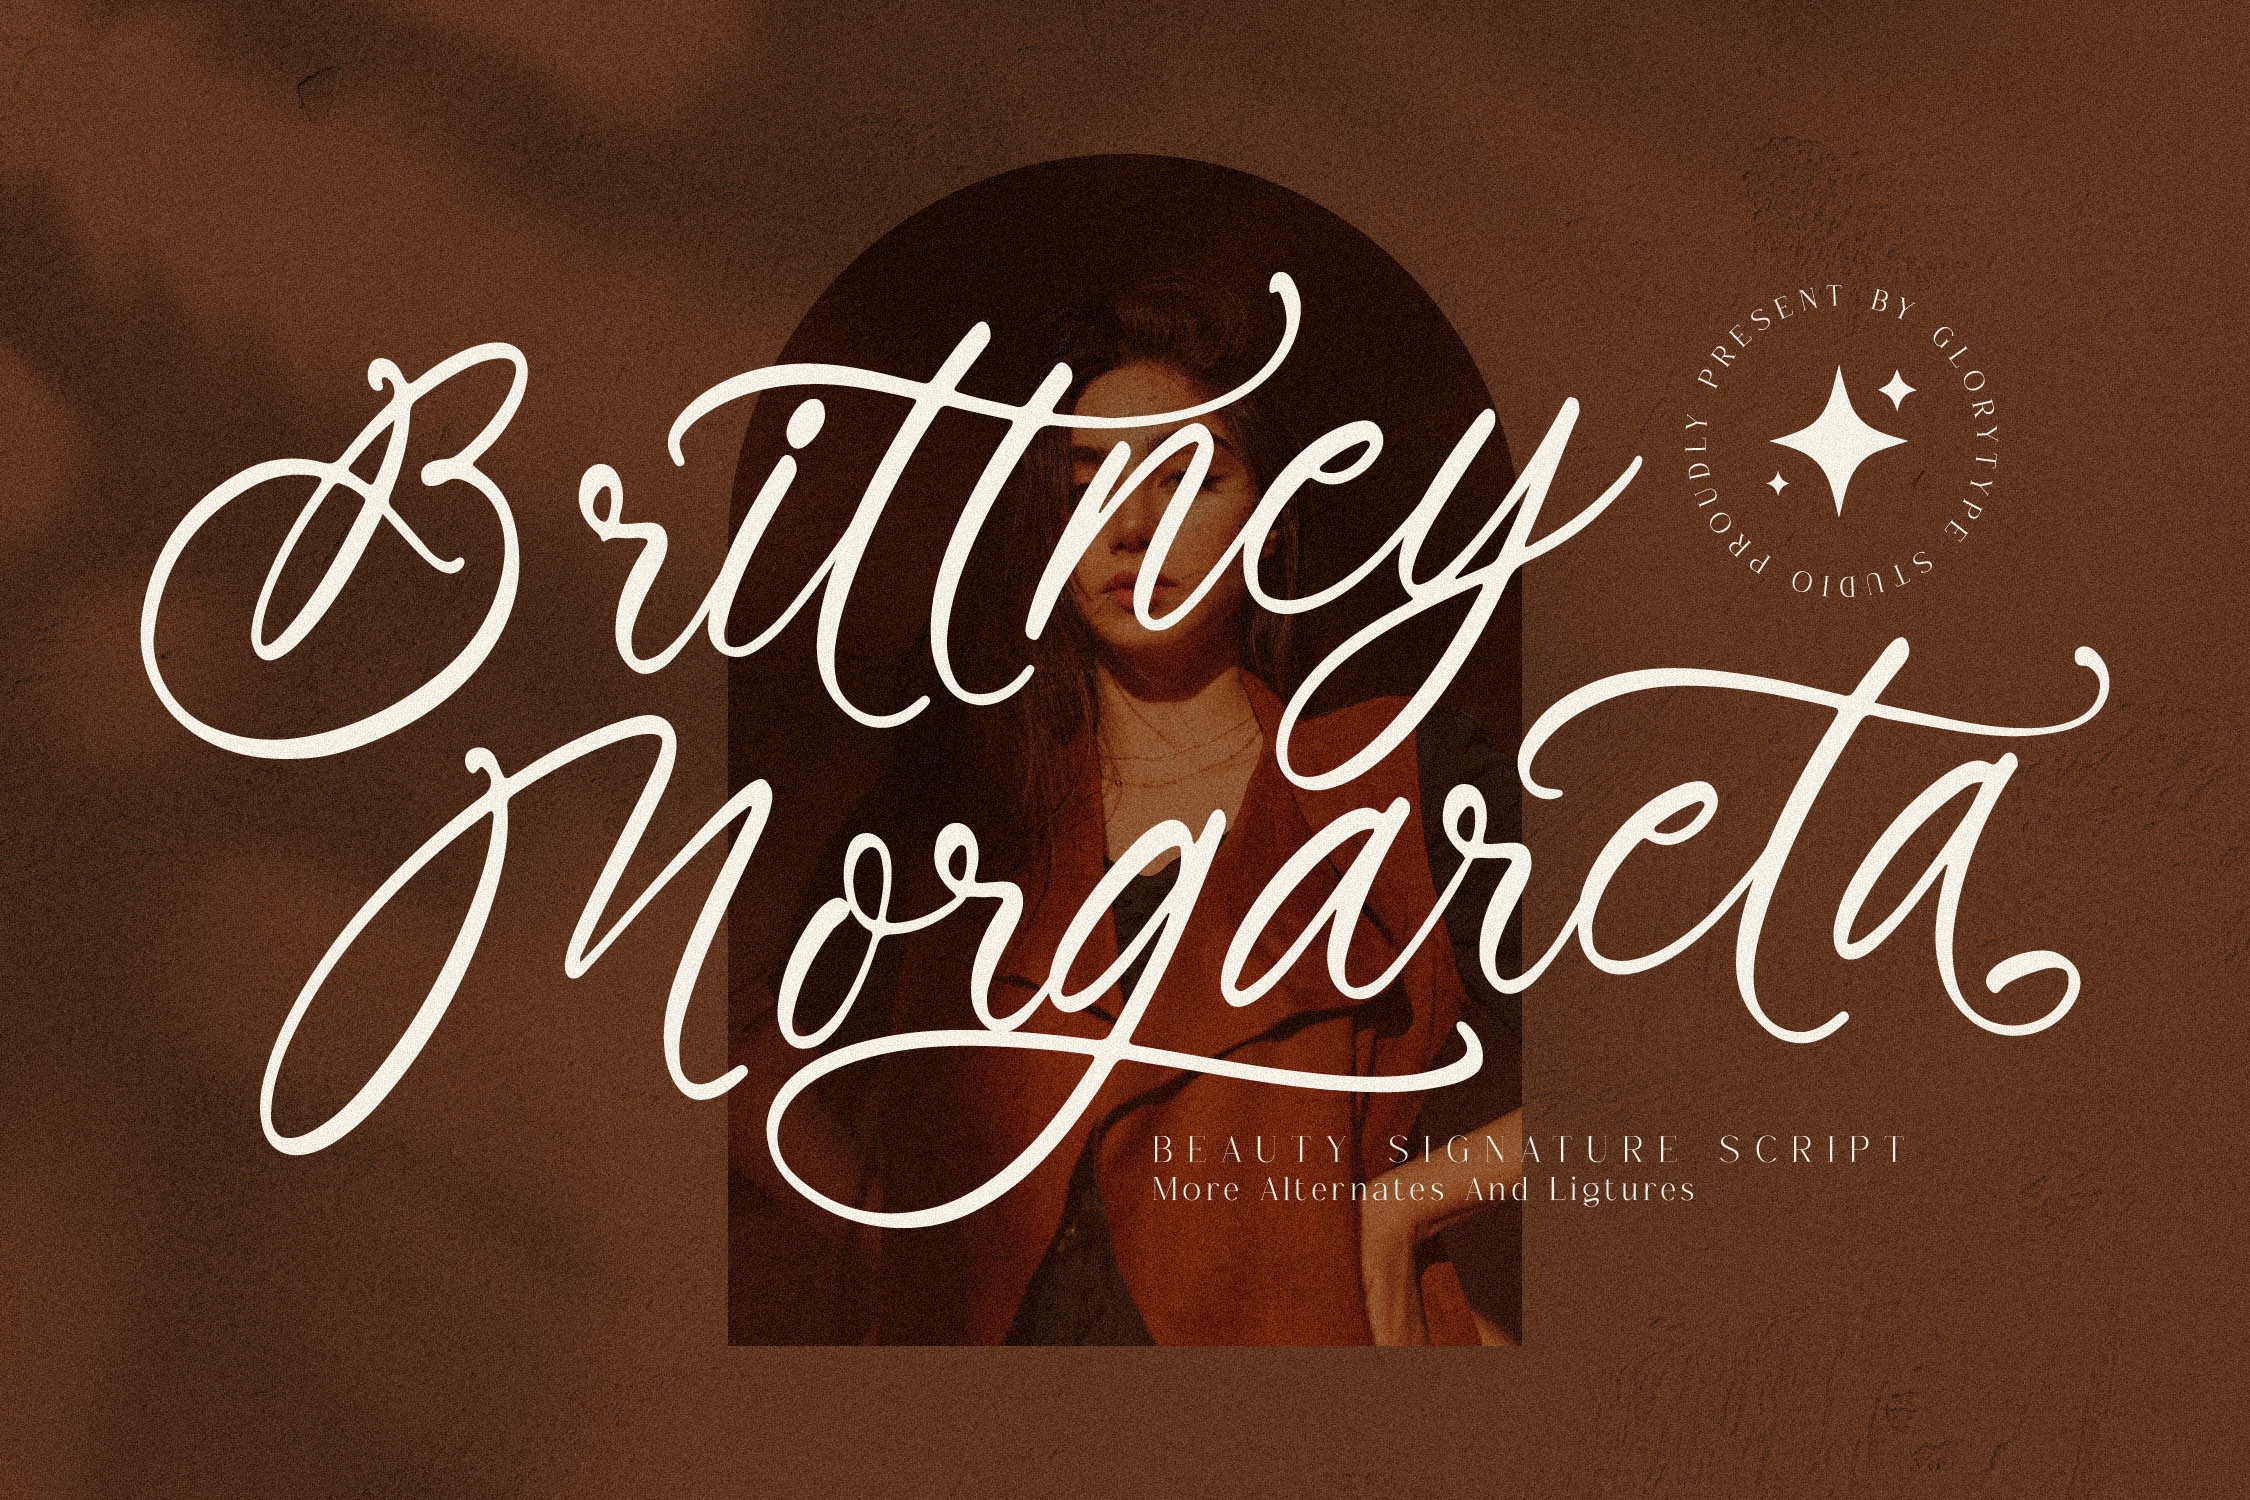 Beispiel einer Brittney Morgareta-Schriftart